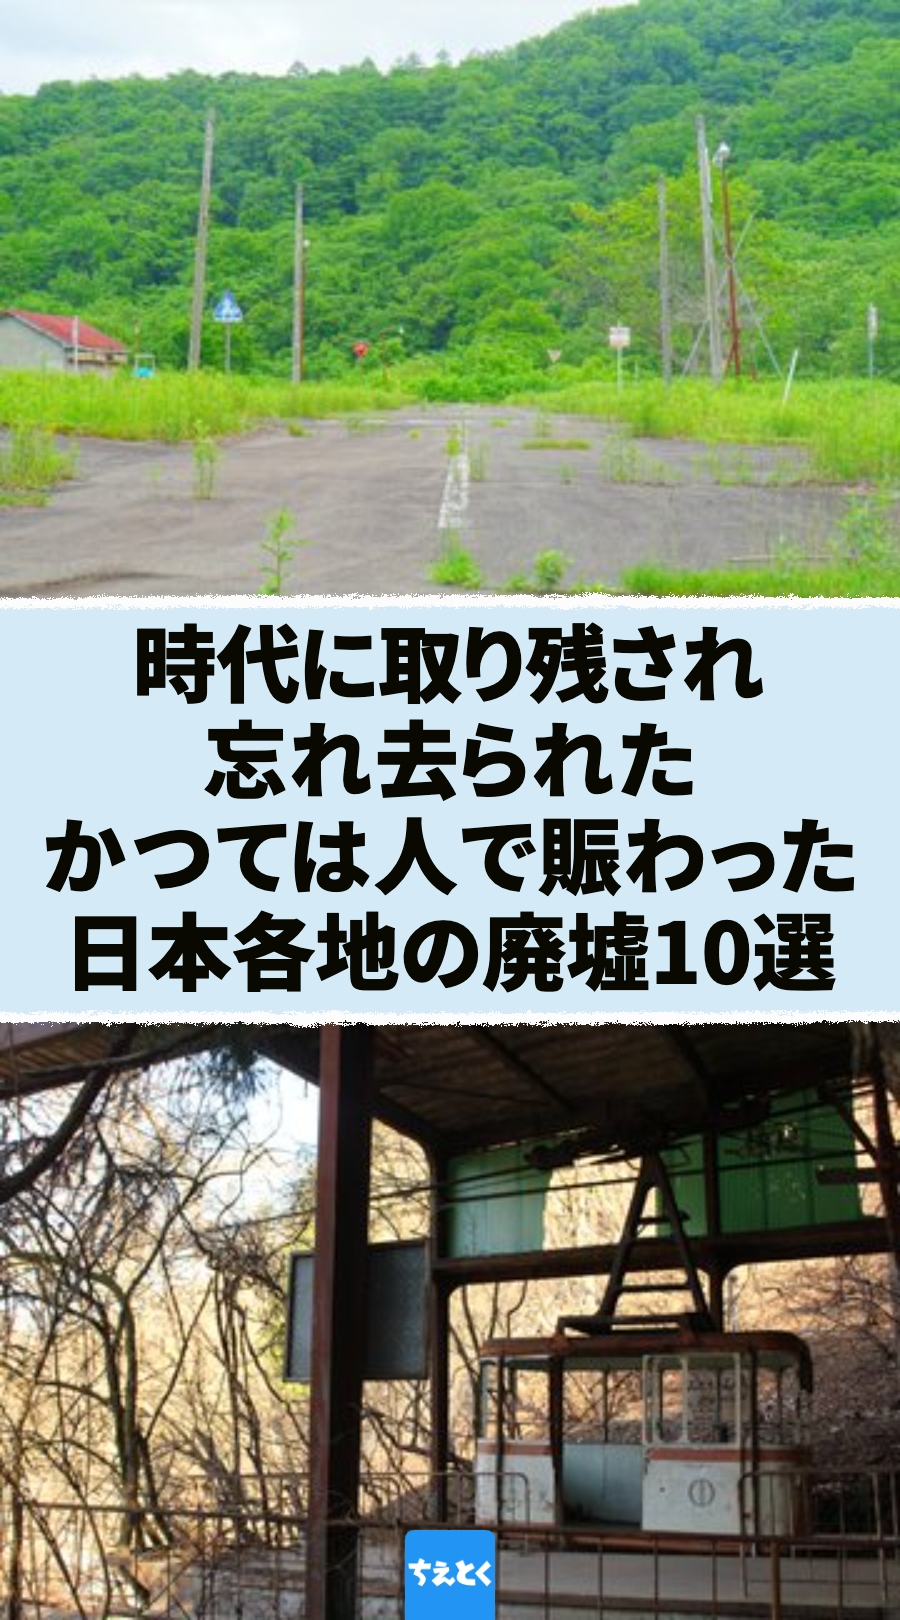 昔は人で賑わった...日本各地で目撃された廃墟10選